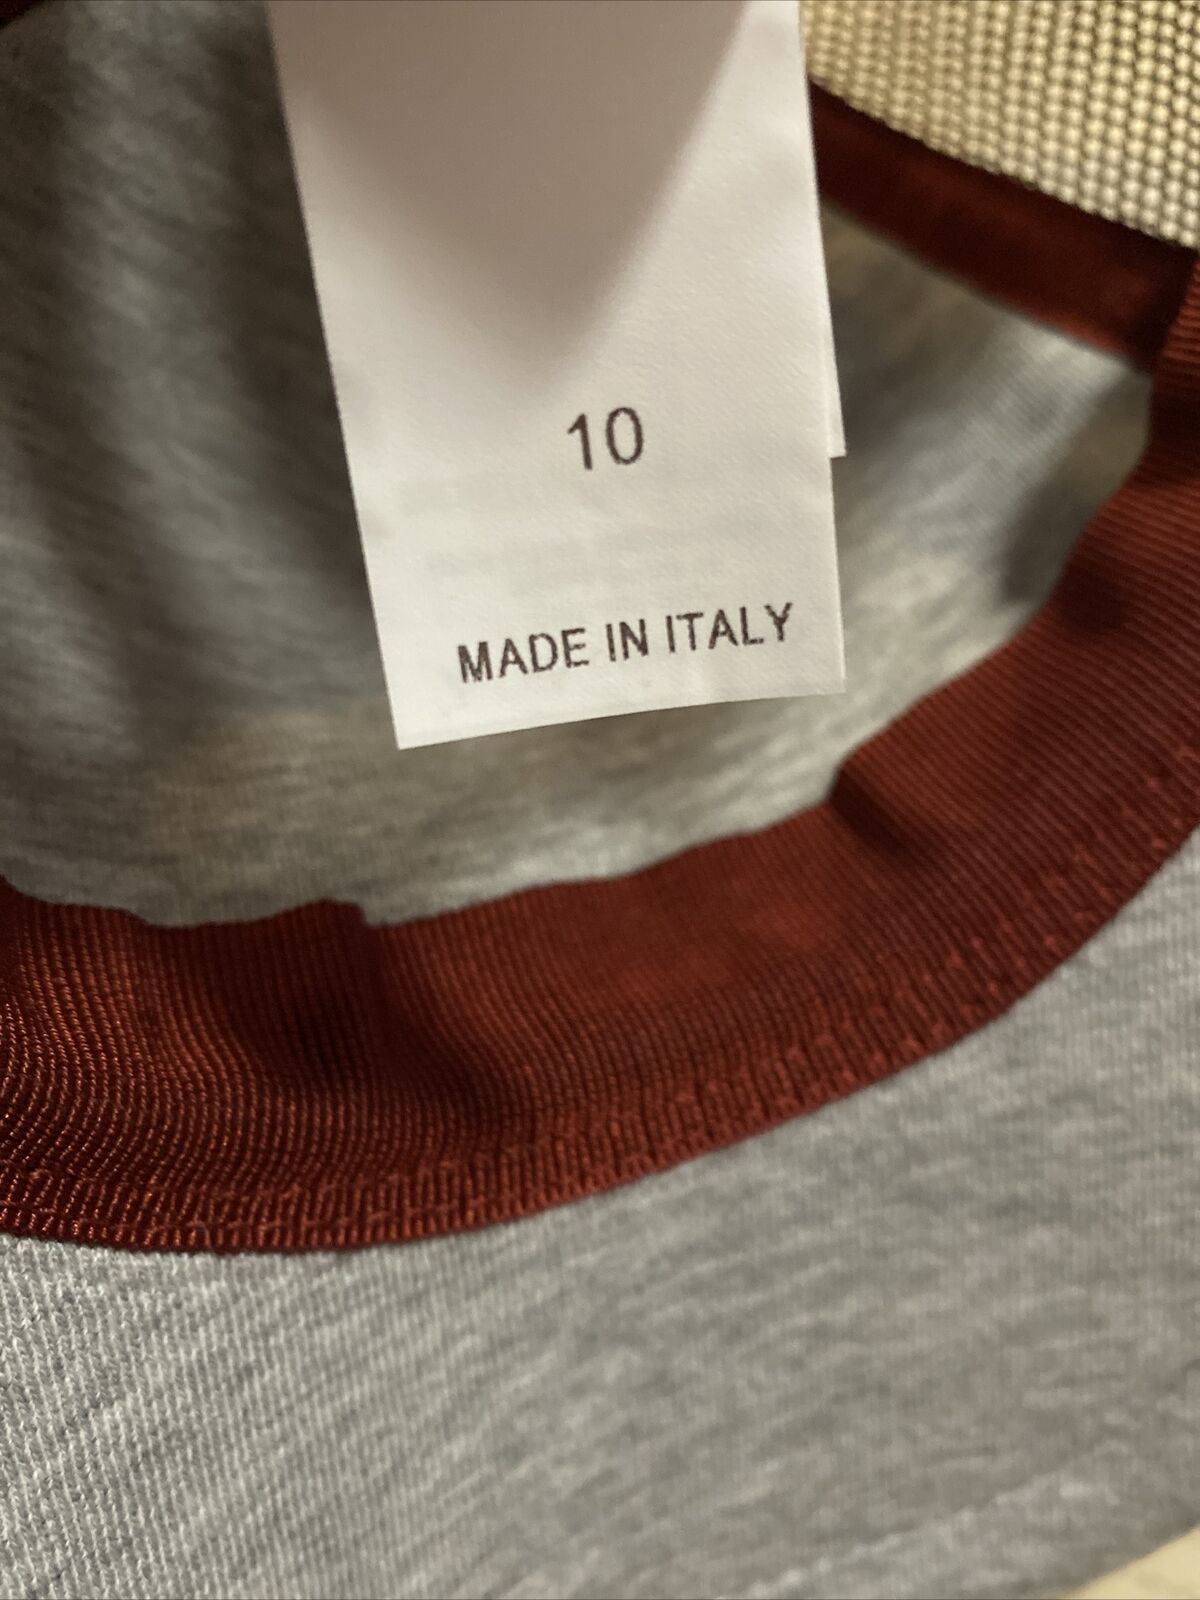 Neu mit Etikett Brunello Cucinelli Jungen Baseballmütze Kappe LT Grau/Braun Größe 10 Italien